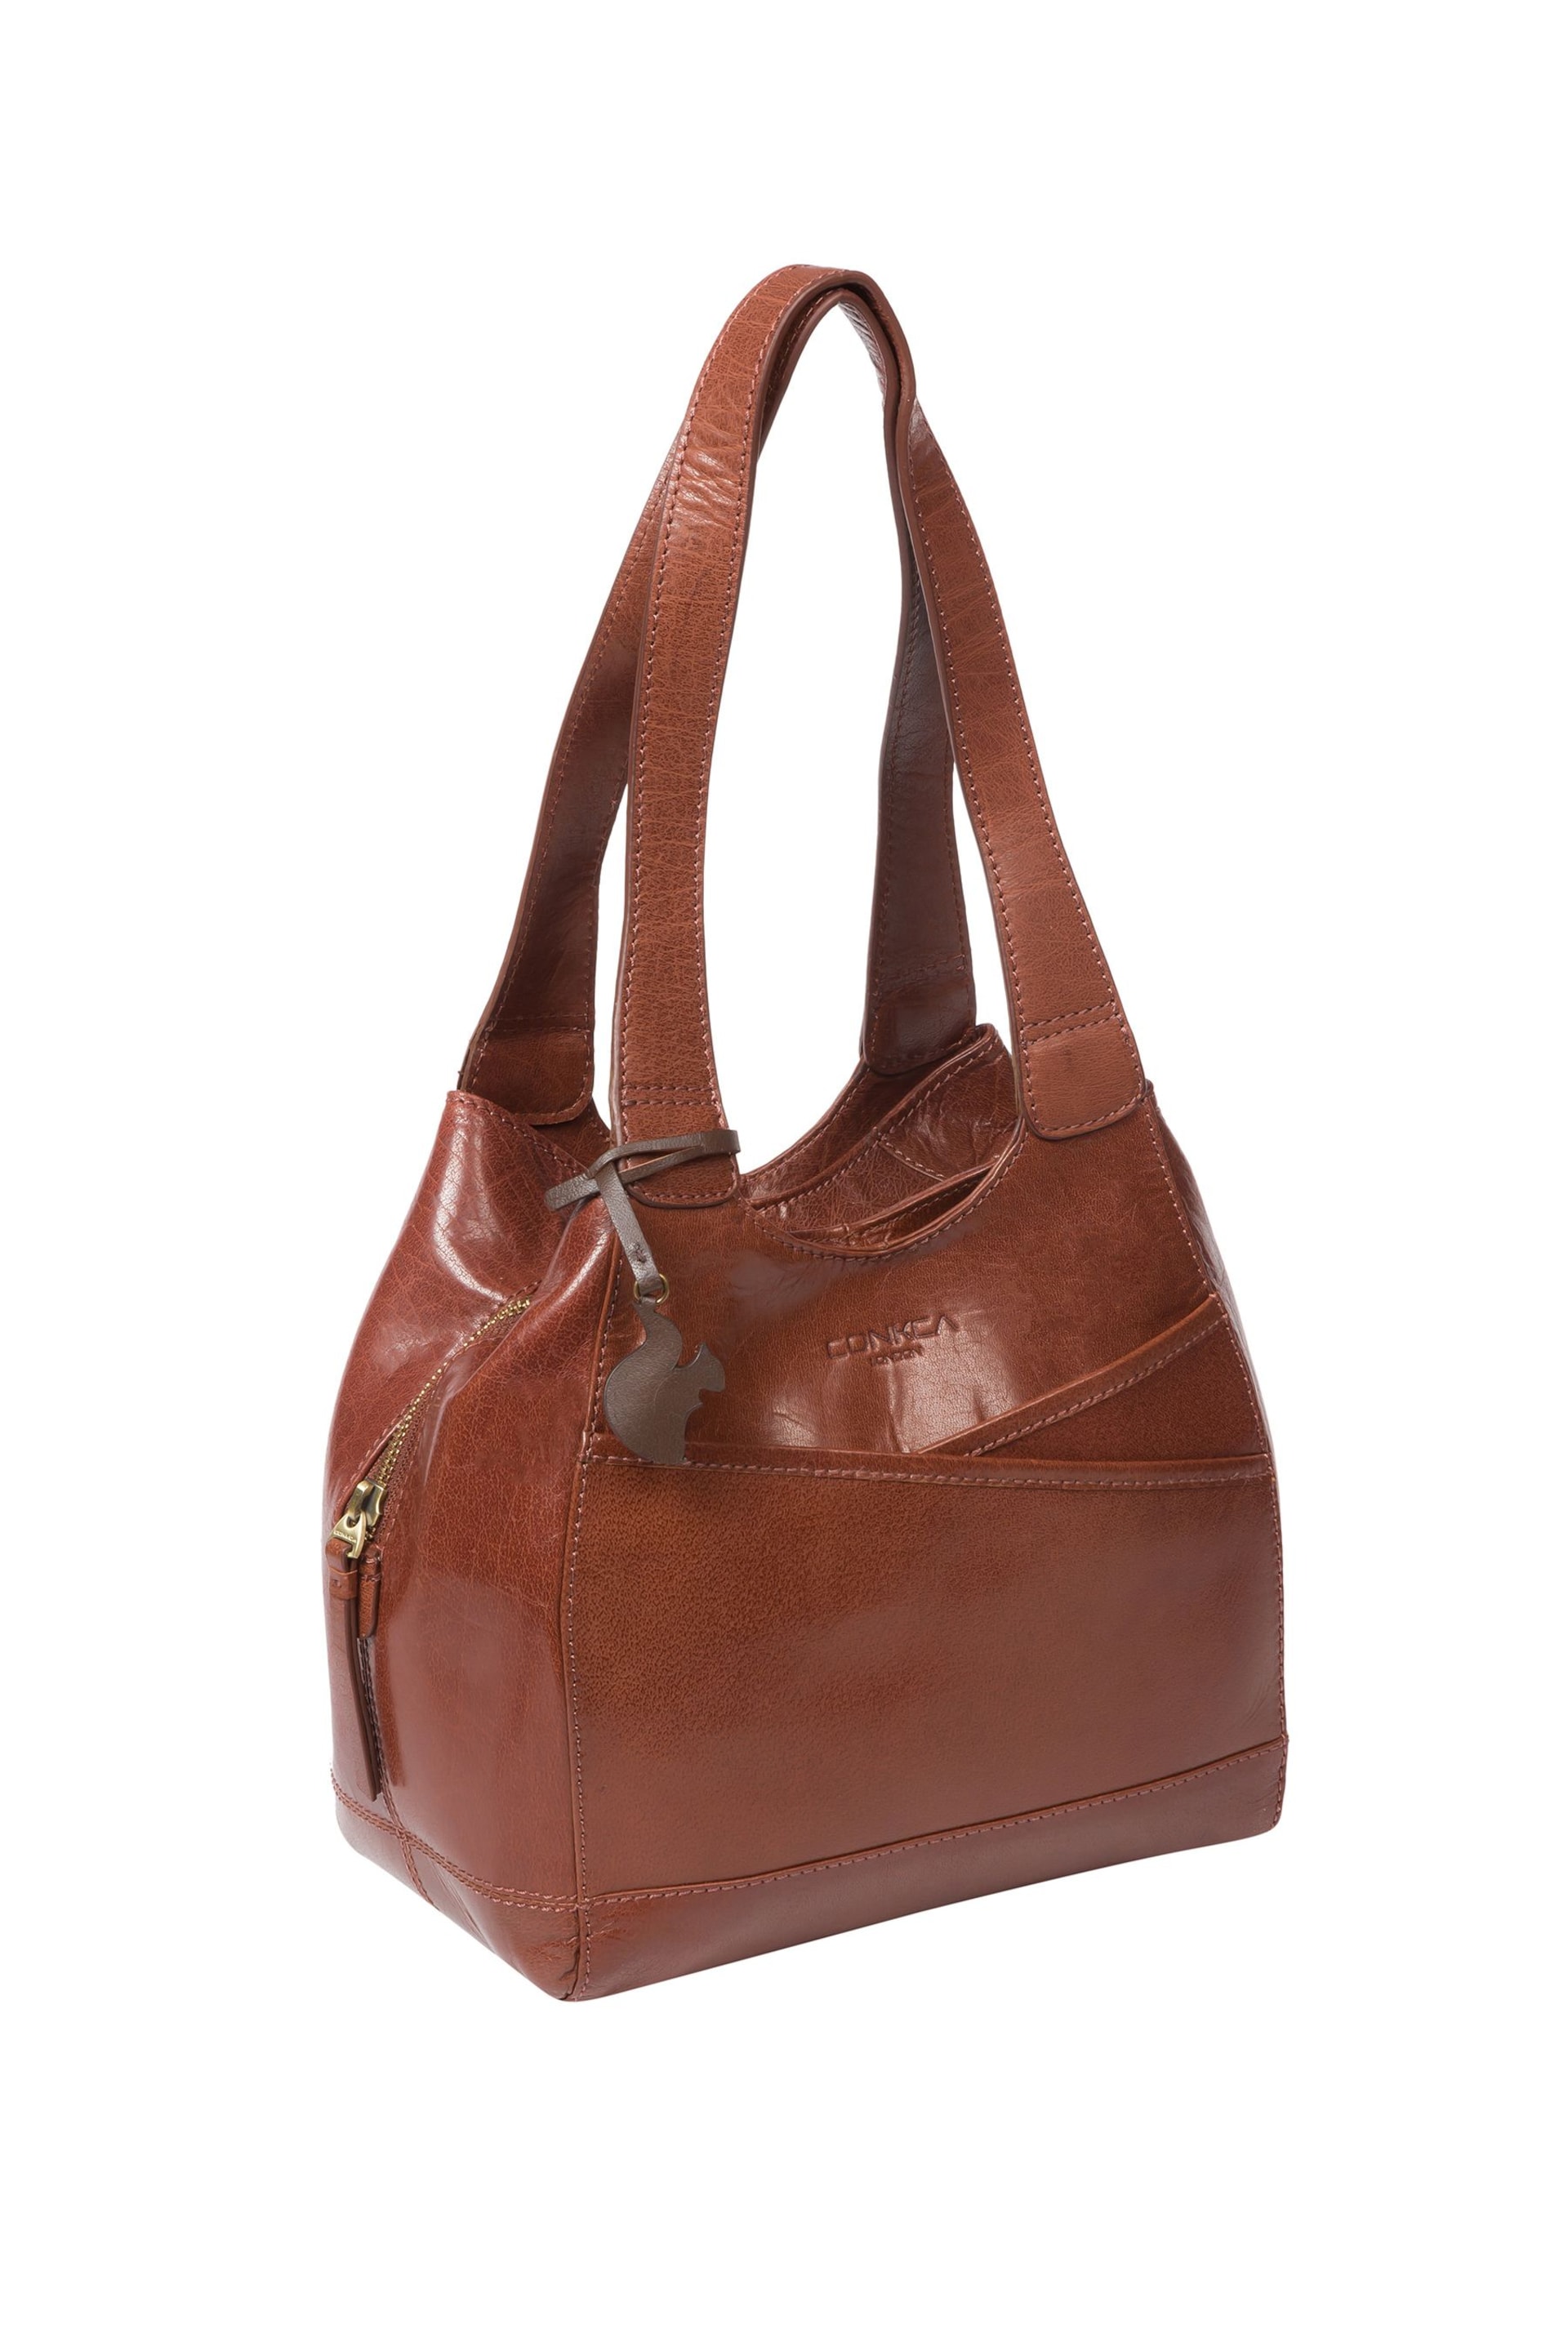 Conkca Juliet Handbag - Image 3 of 6